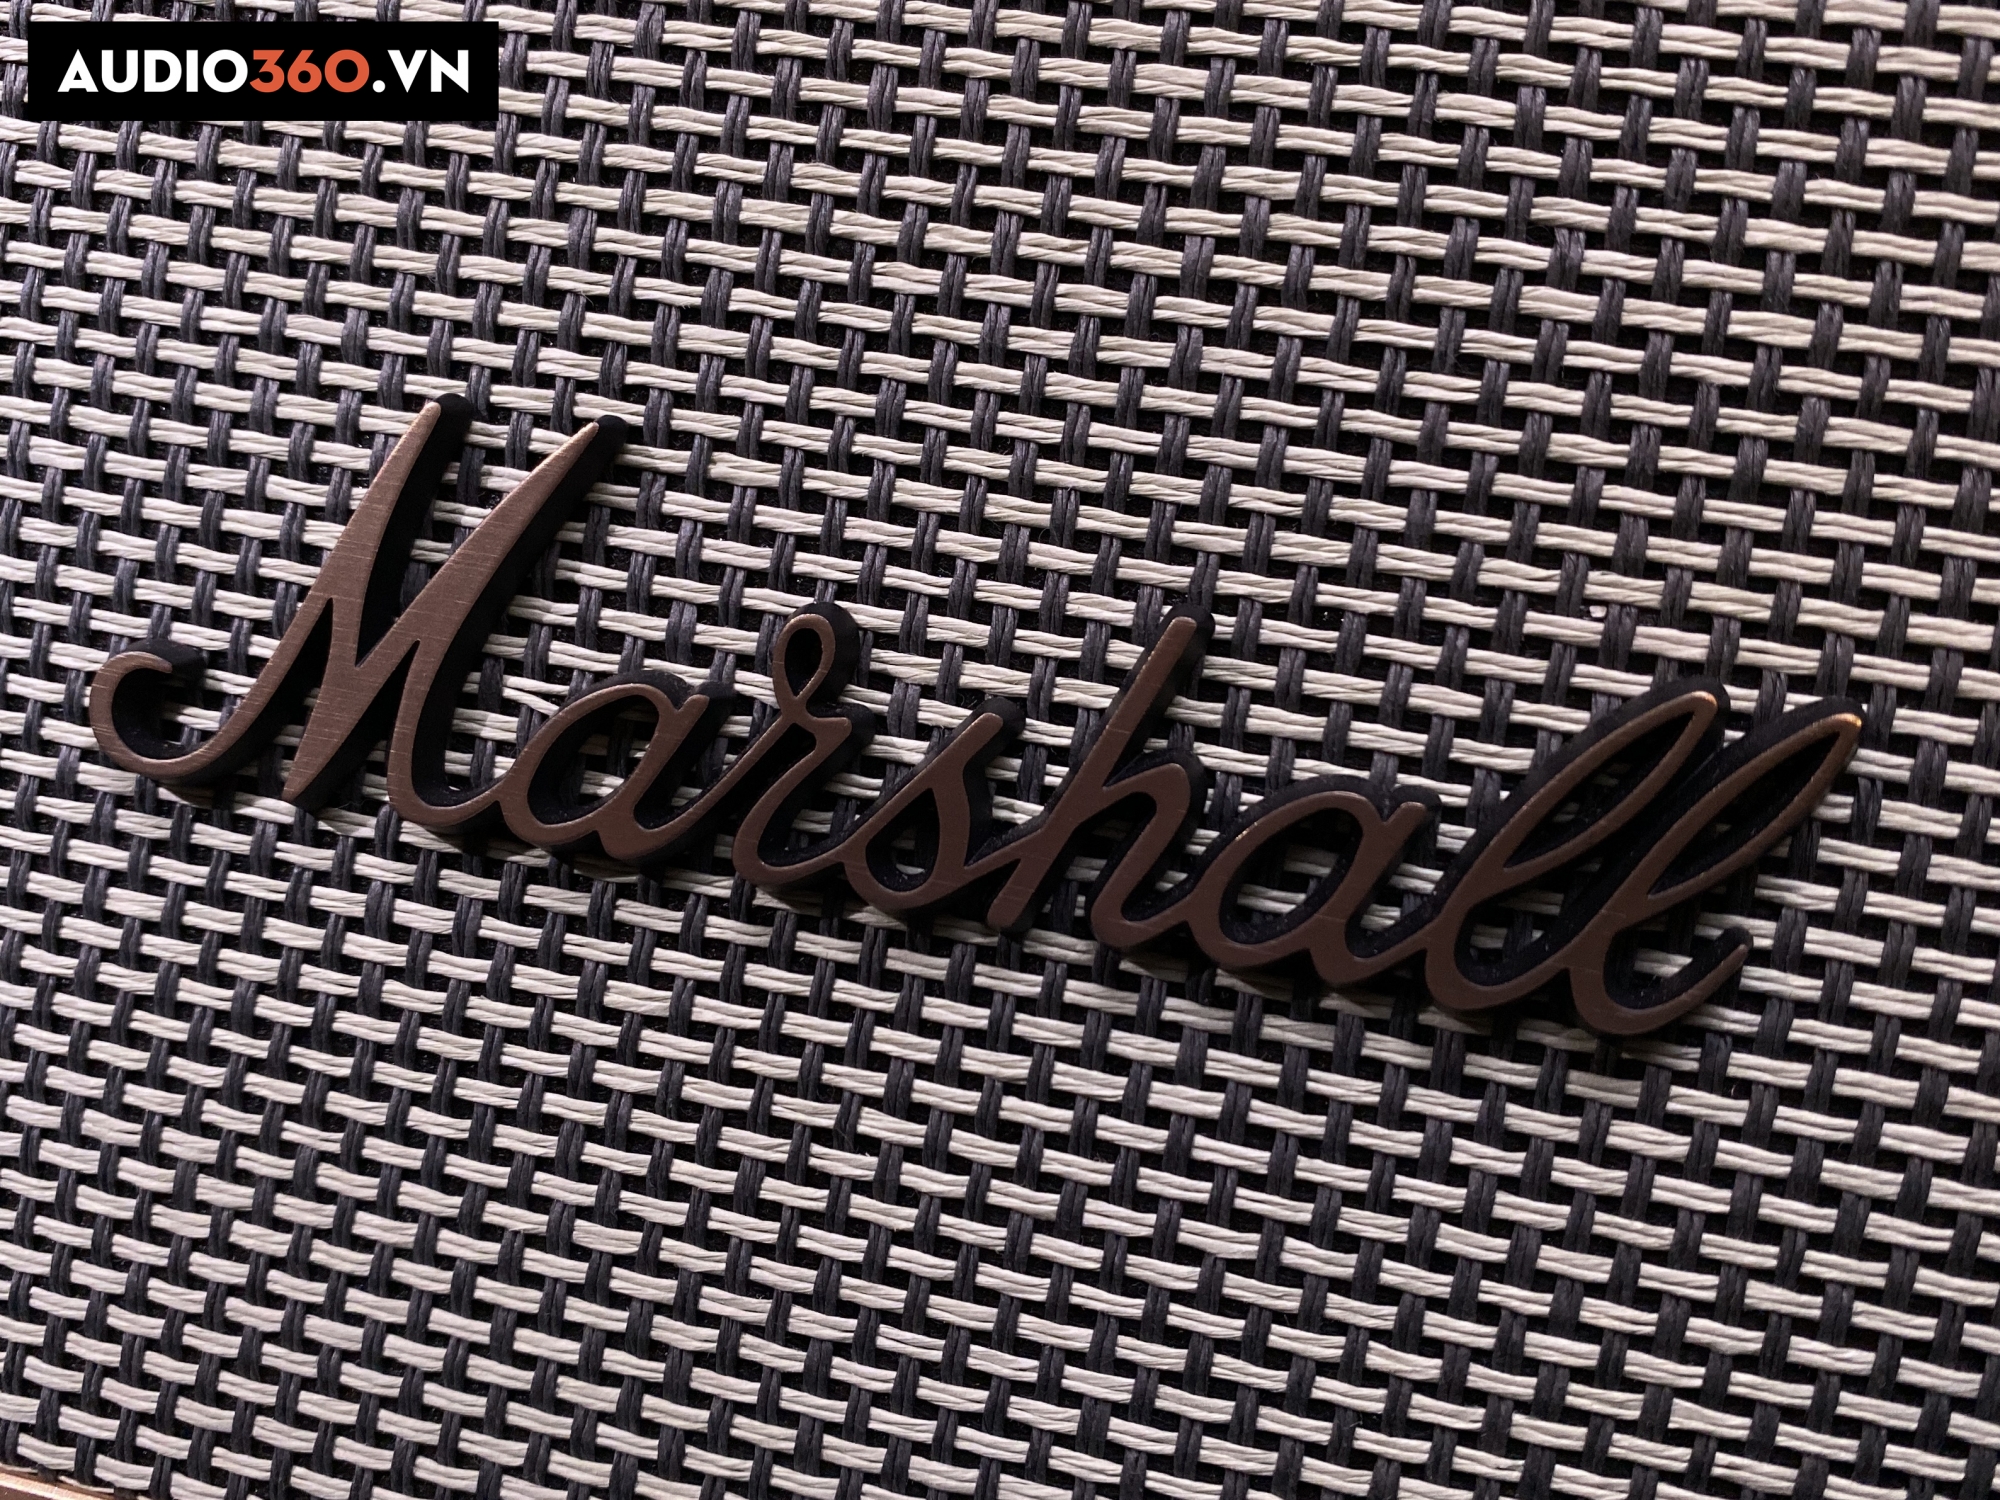 Logo Marshall đặc trưng trên mỗi sản phẩm loa bluetooth của hãng